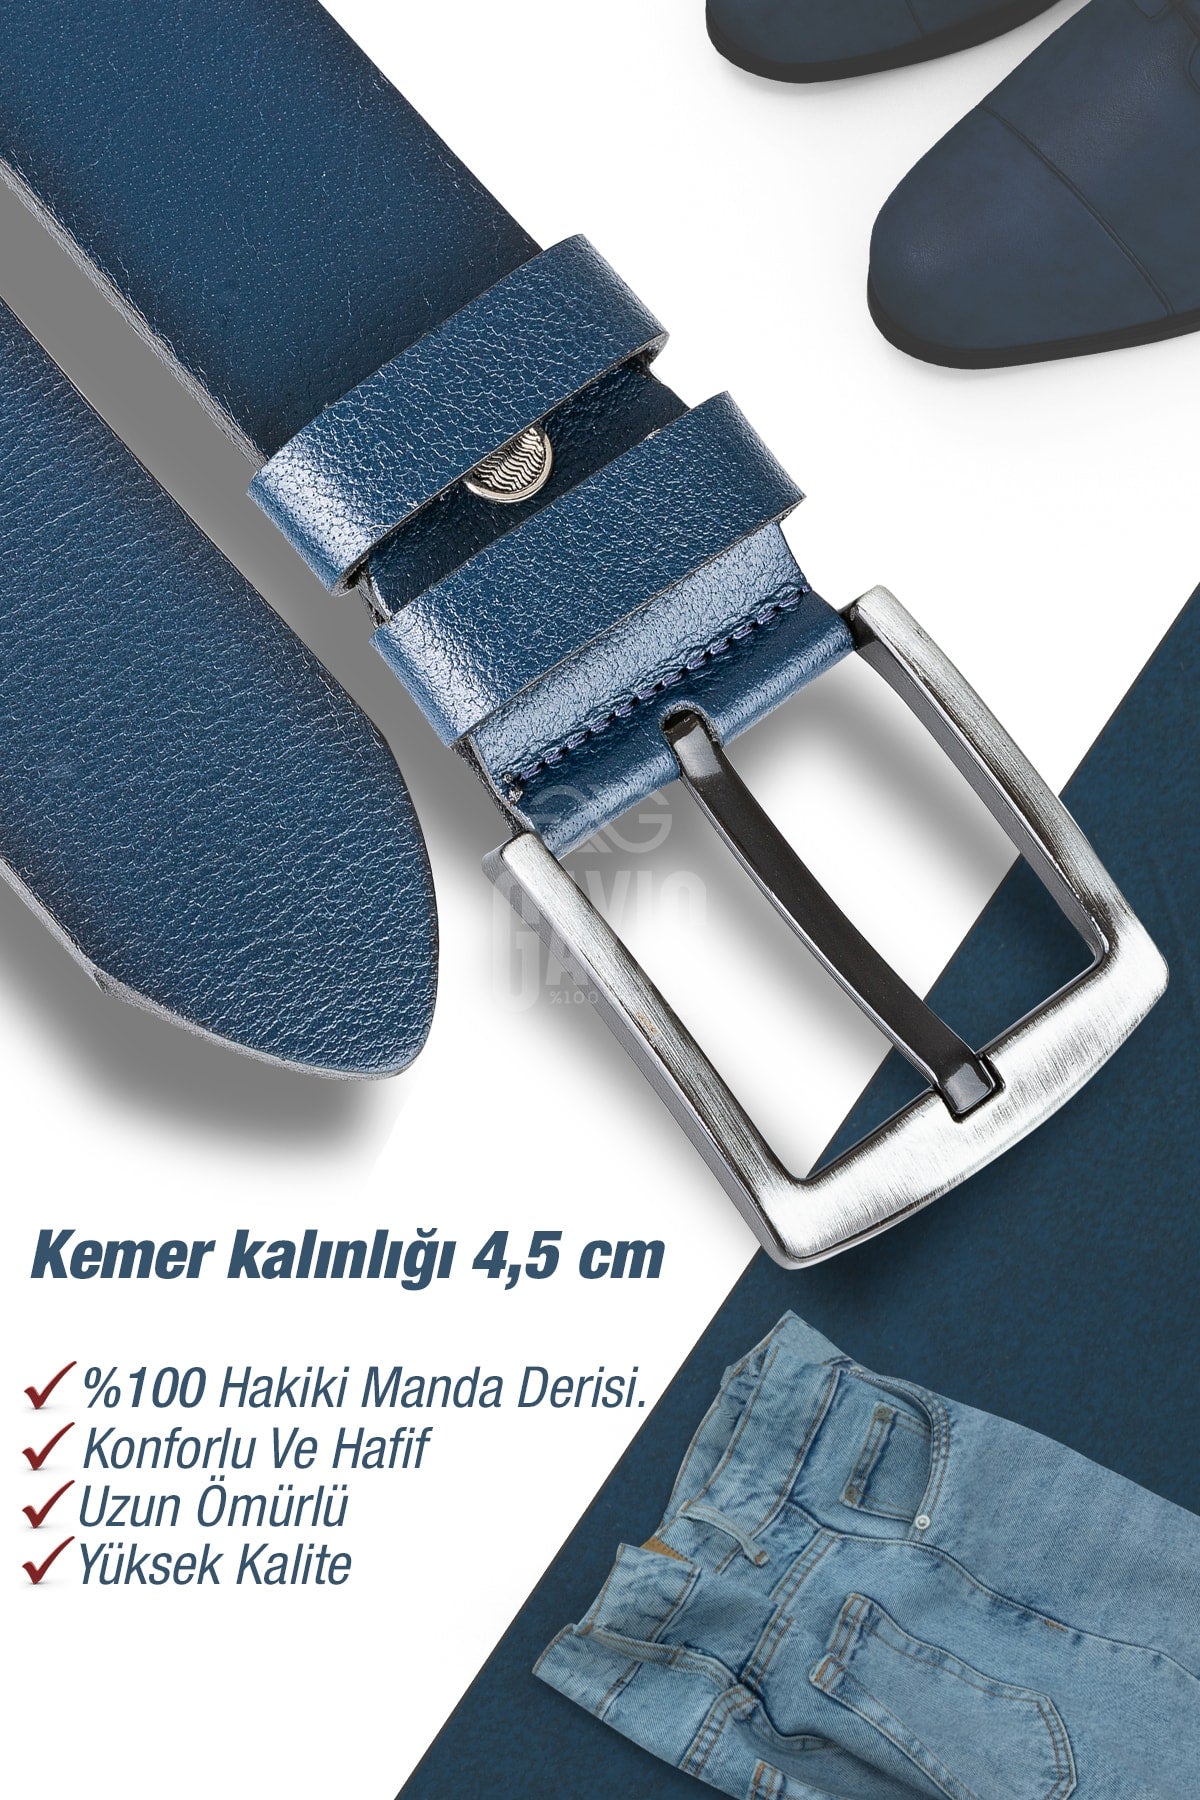 %1oo Genuine Buffalo Leather Navy Blue Men's Jeans Belt - Men's Gift Belt